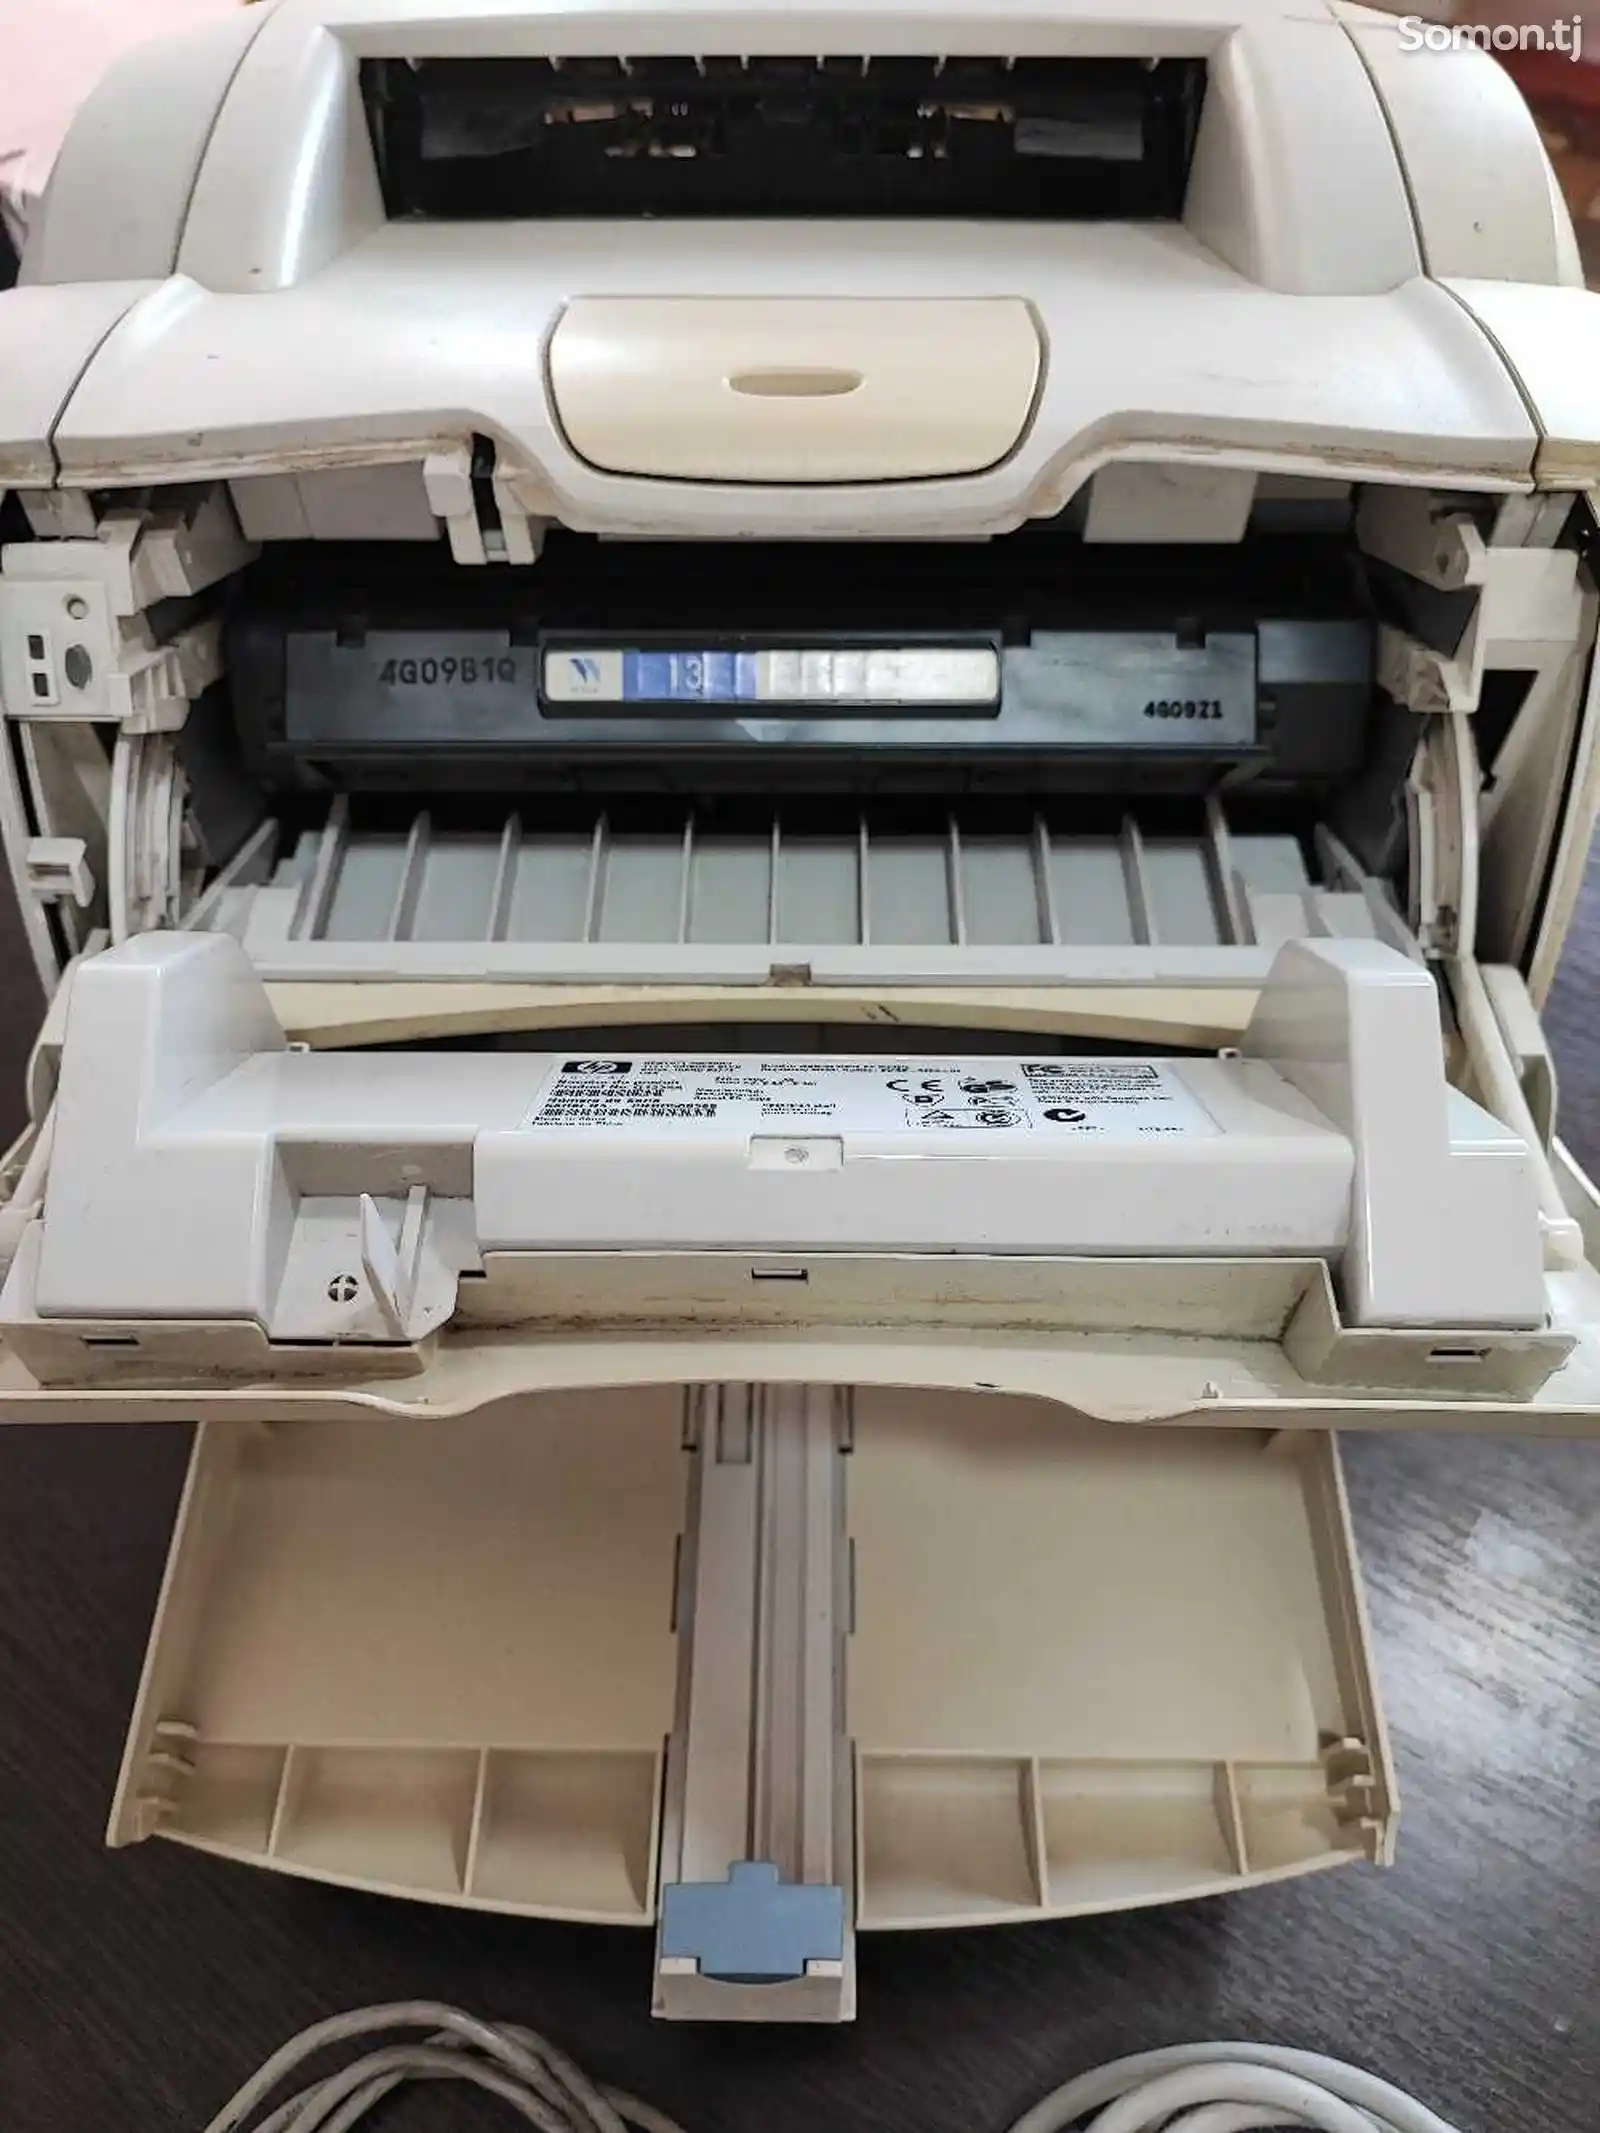 Принтер HP LaserJet 1300-4